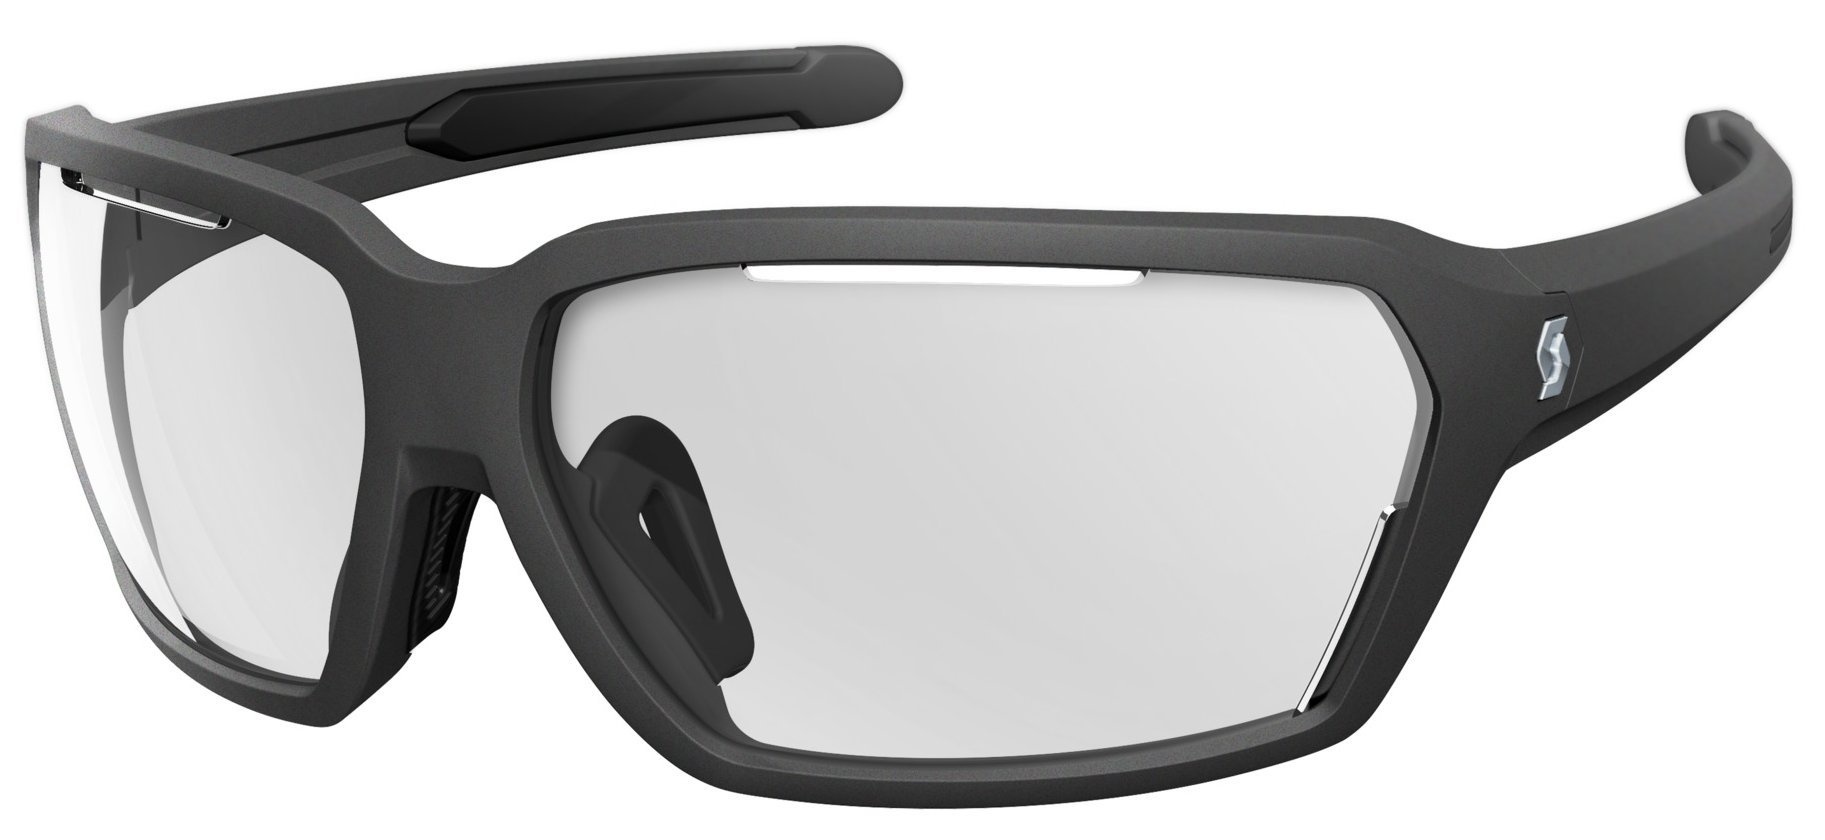 Beklædning - Cykelbriller - Scott Vector Solbrille - sort